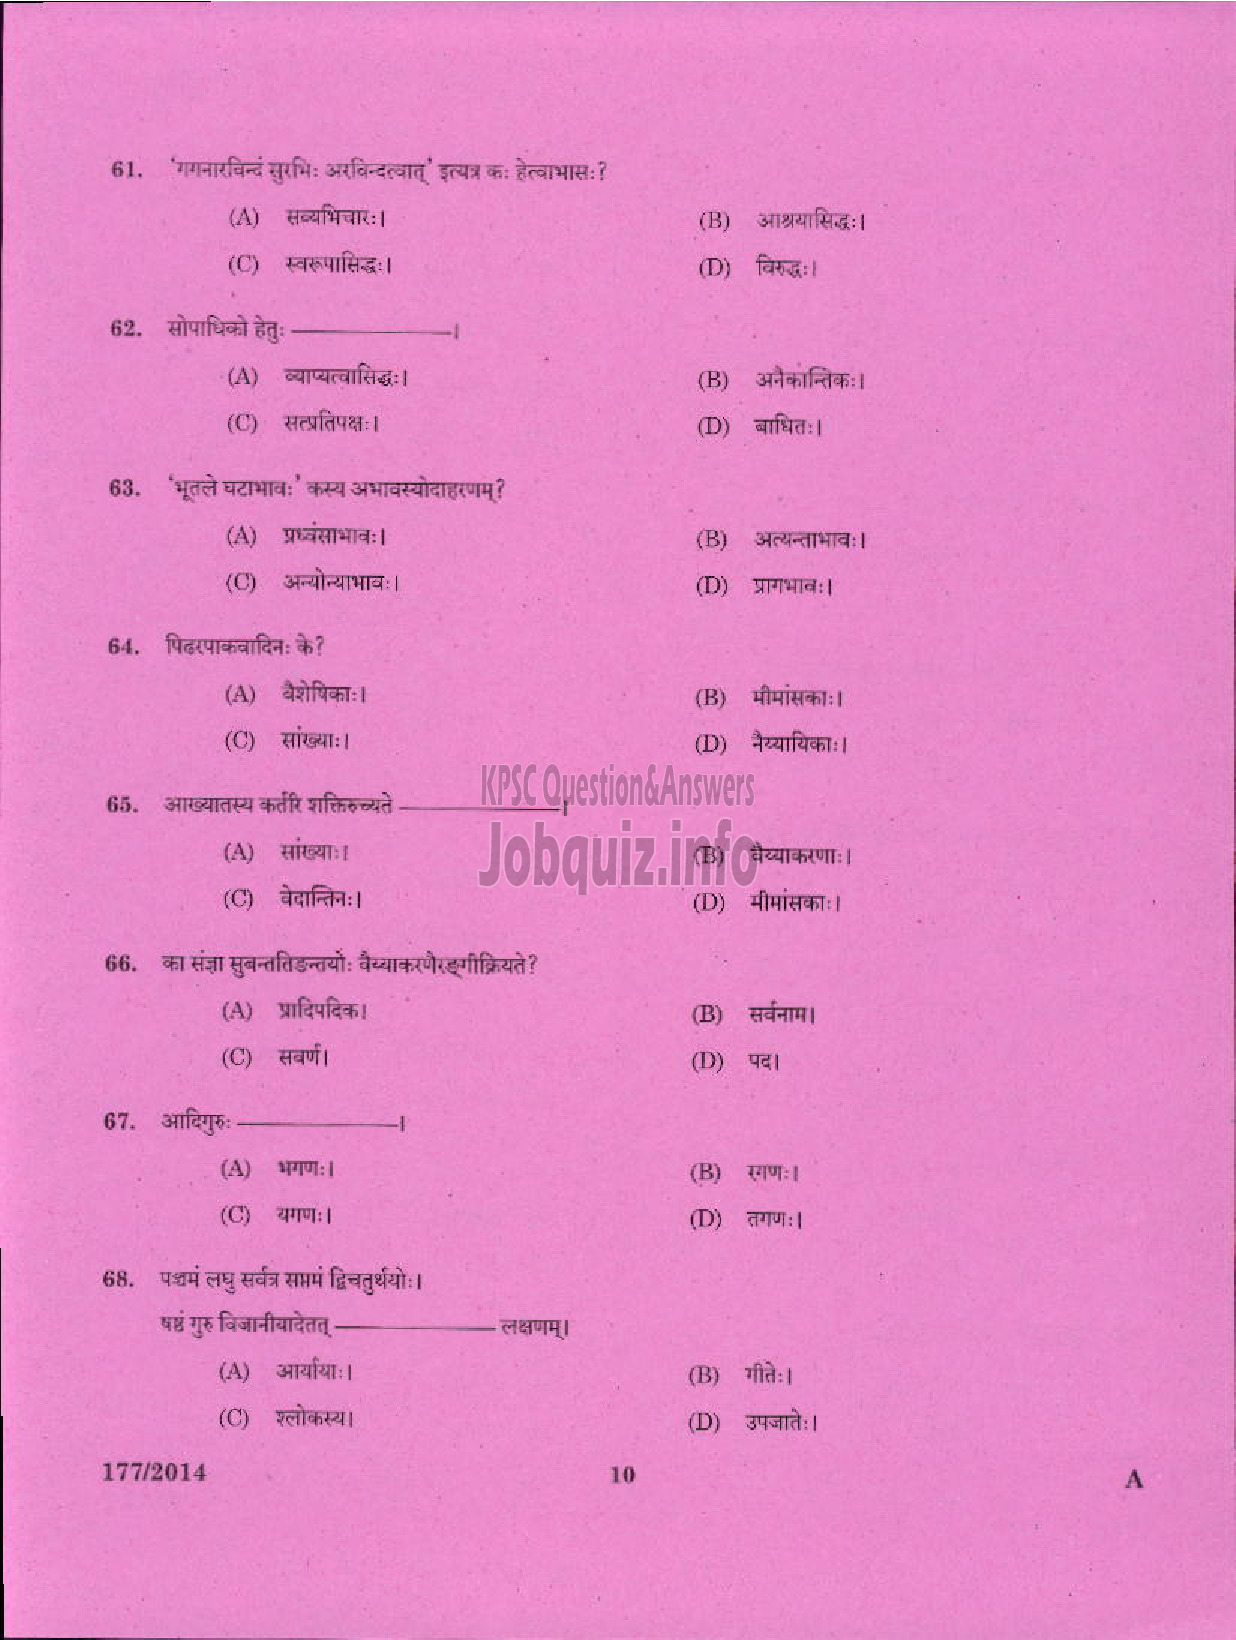 Kerala PSC Question Paper - PART TIME JUNIOR LANGUAGE TEACHER SANSKRIT EDUCATION-8